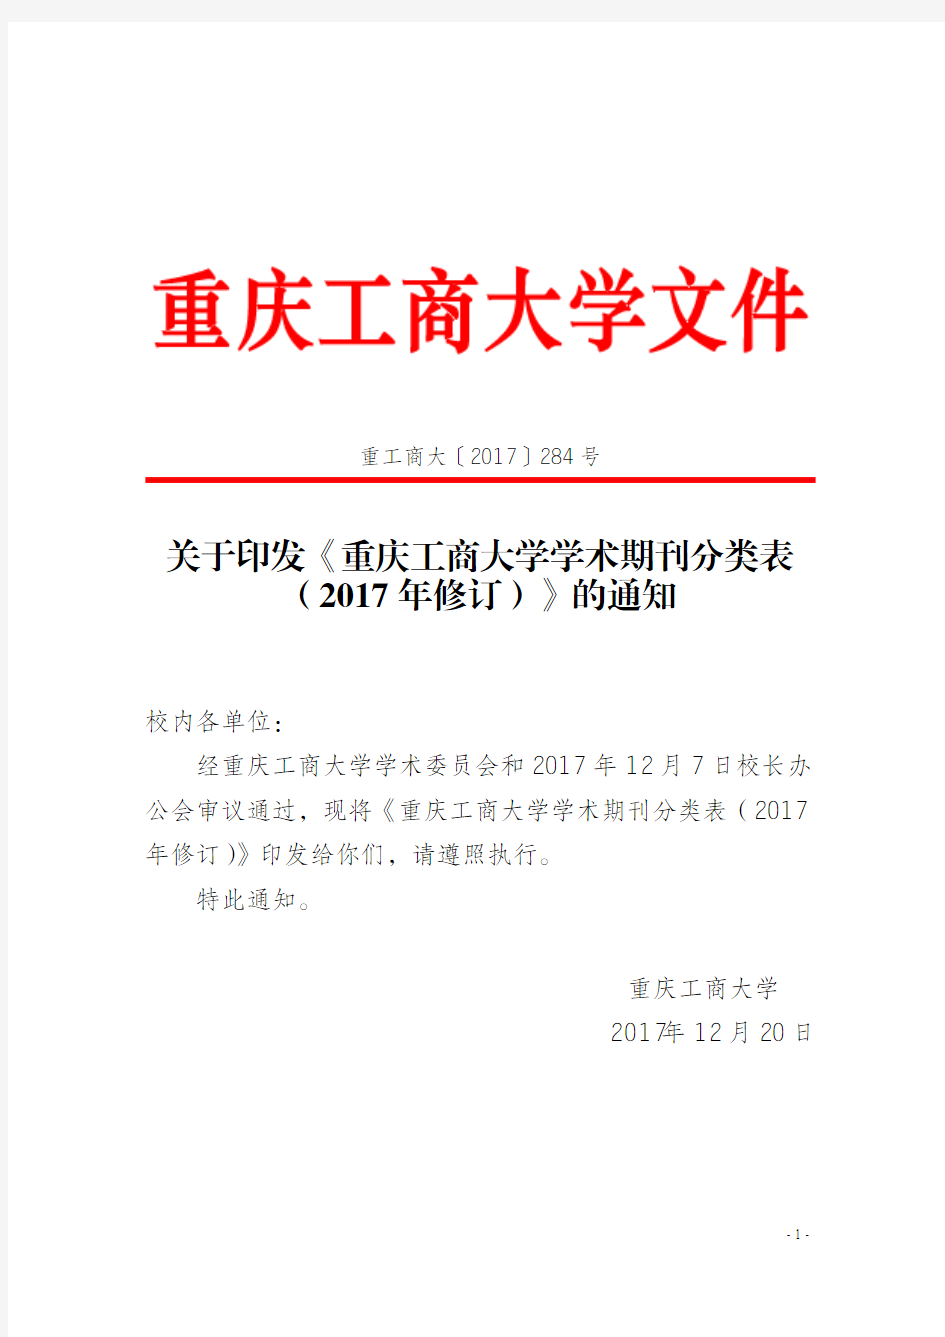 重庆工商大学学术期刊分类表(2017年修订).重工商大[2017]284号